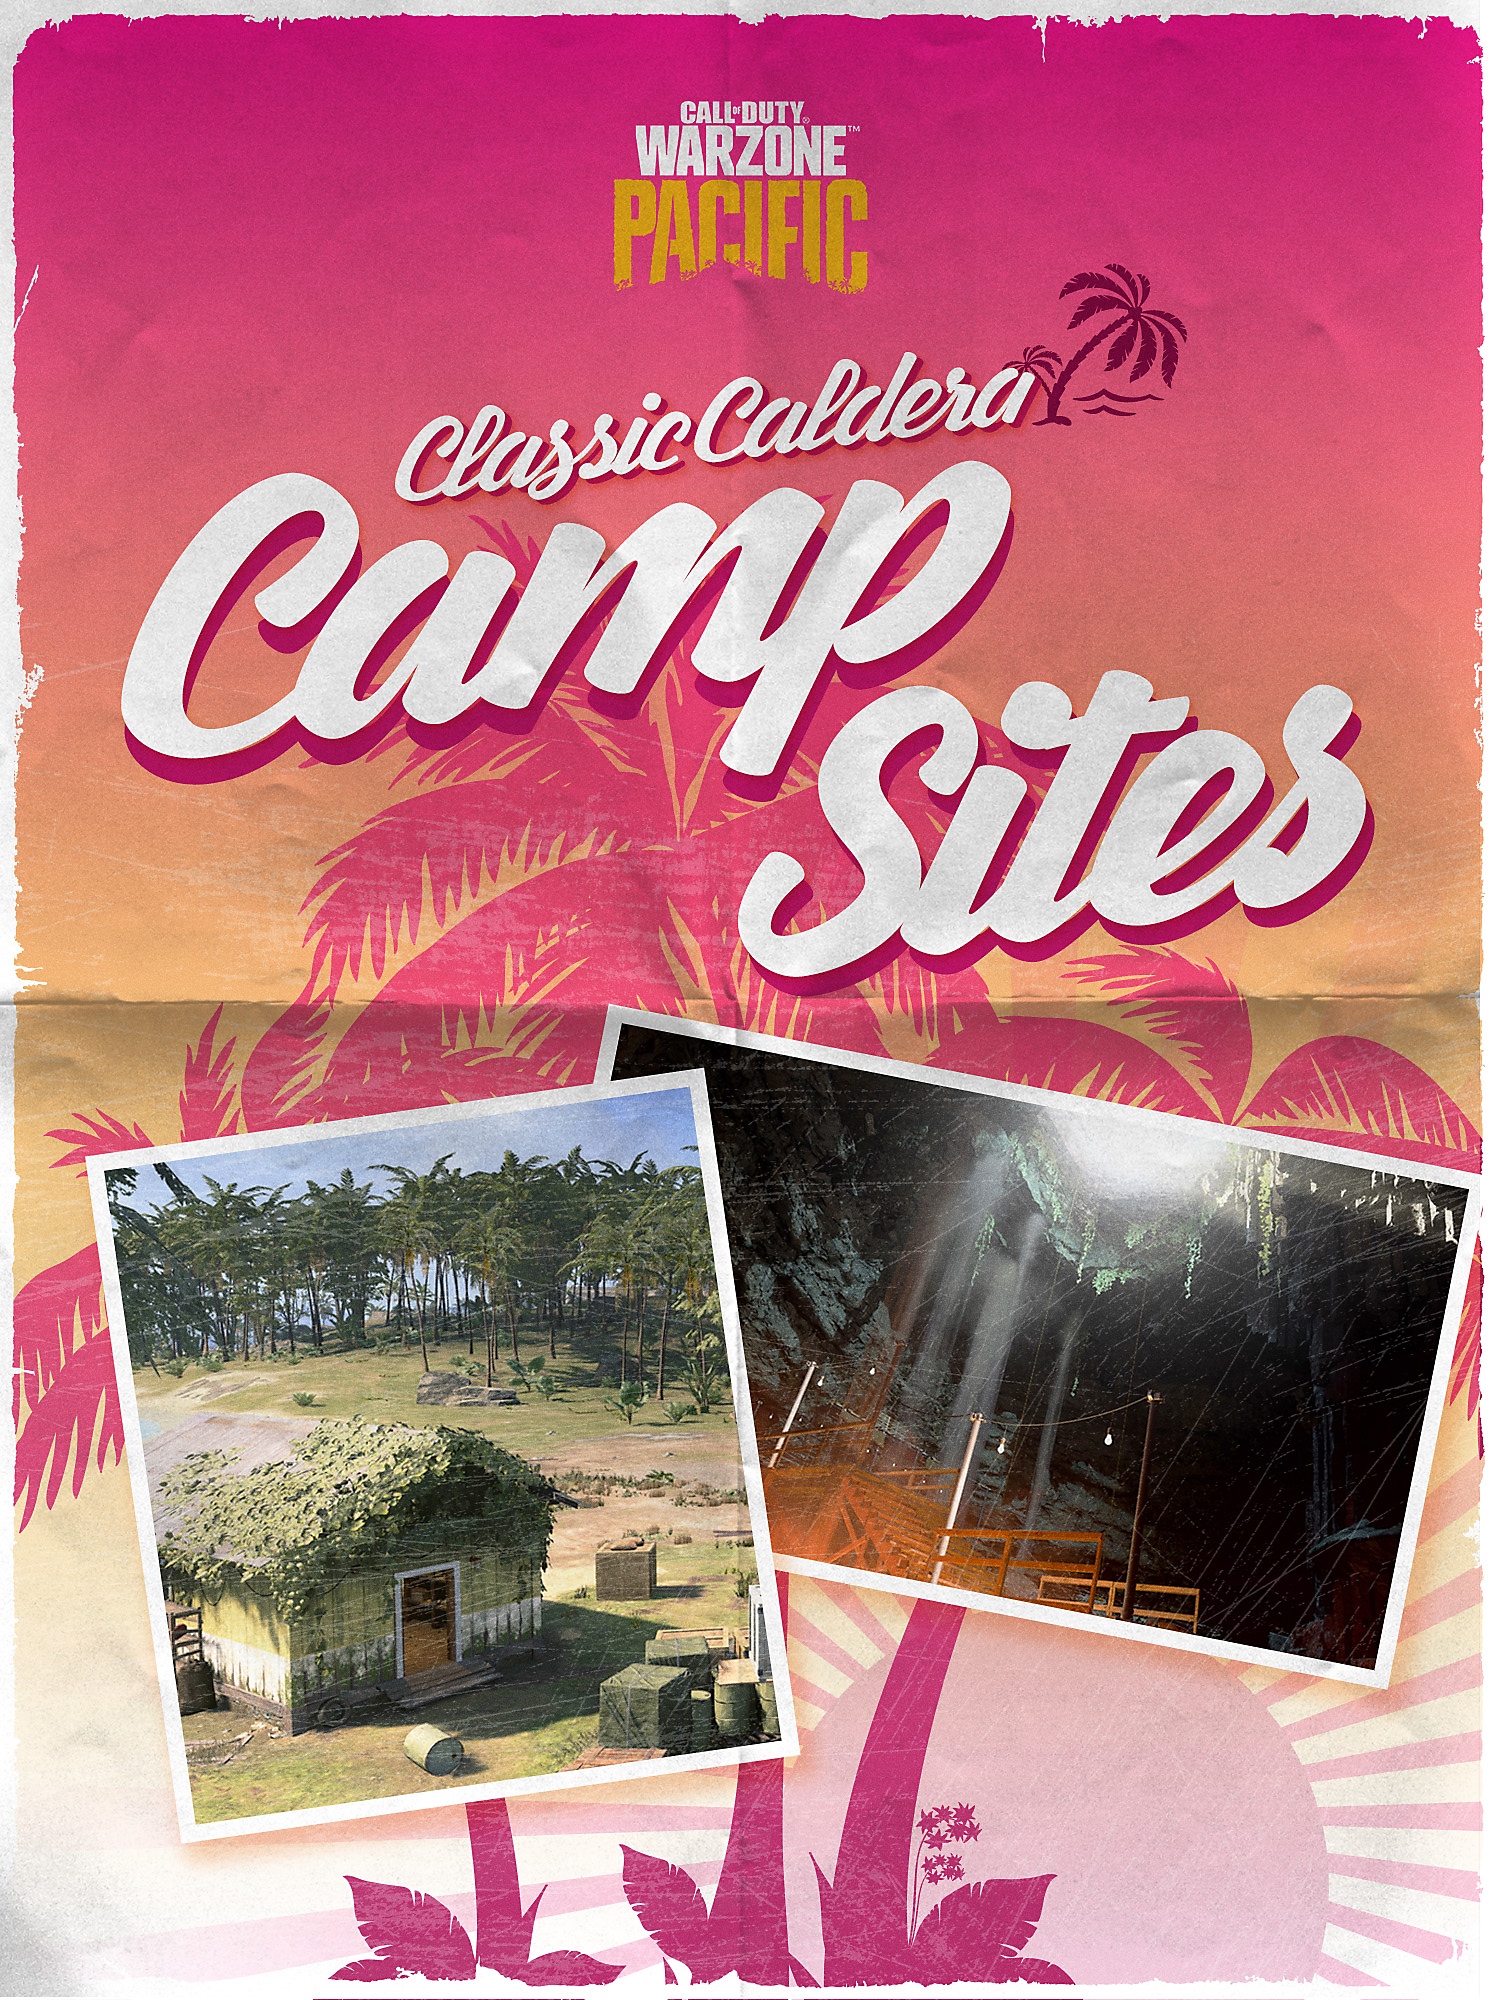 Couverture de la brochure des campements de Caldera classiques